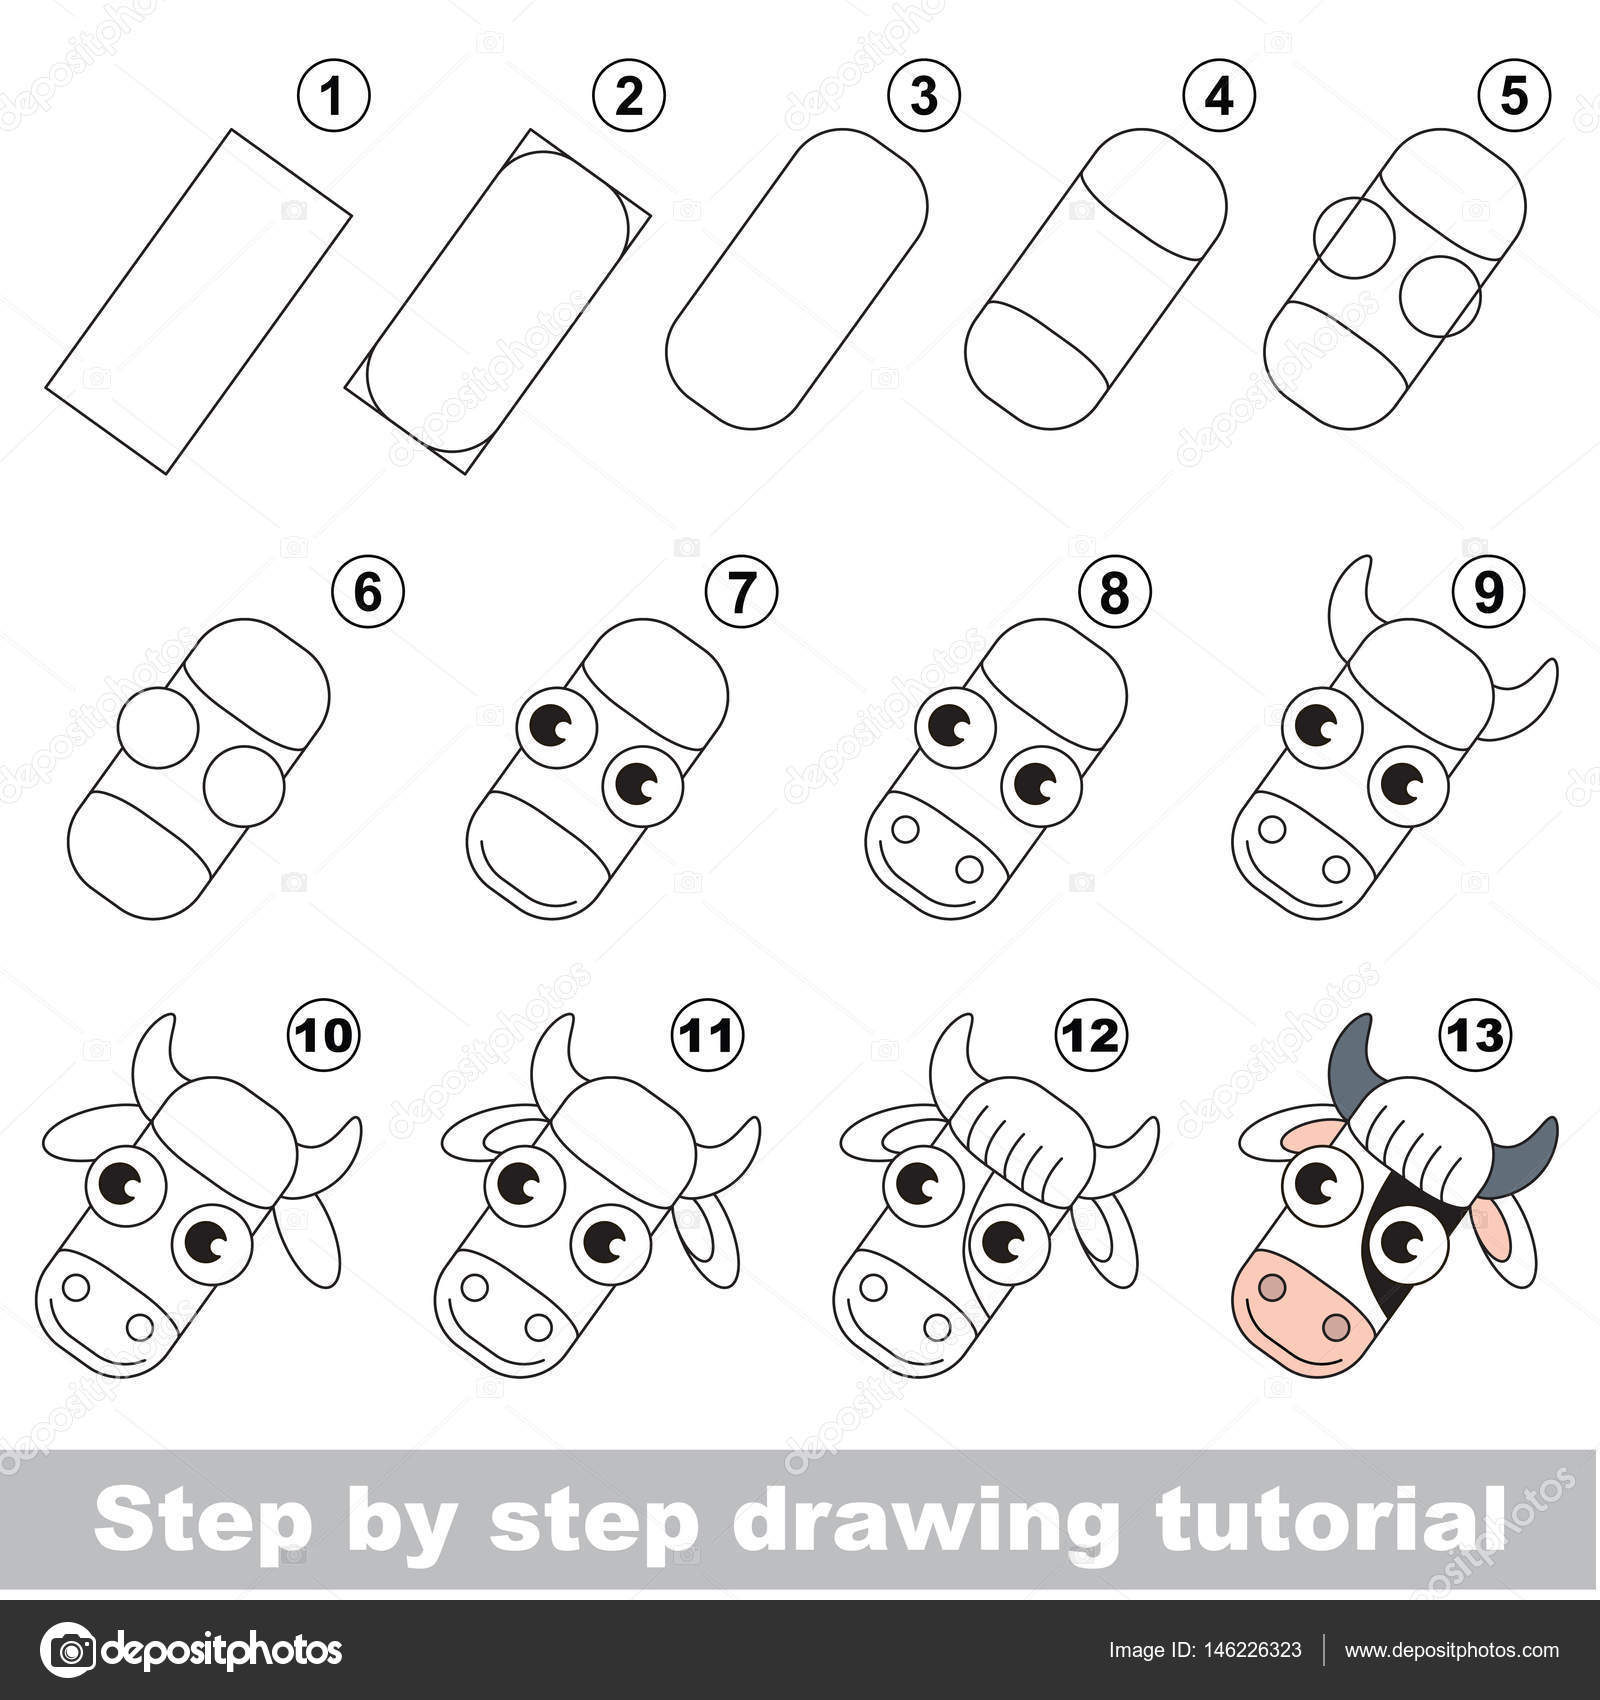 Desenho passo a passo. tutorial de desenho para crianças. nível